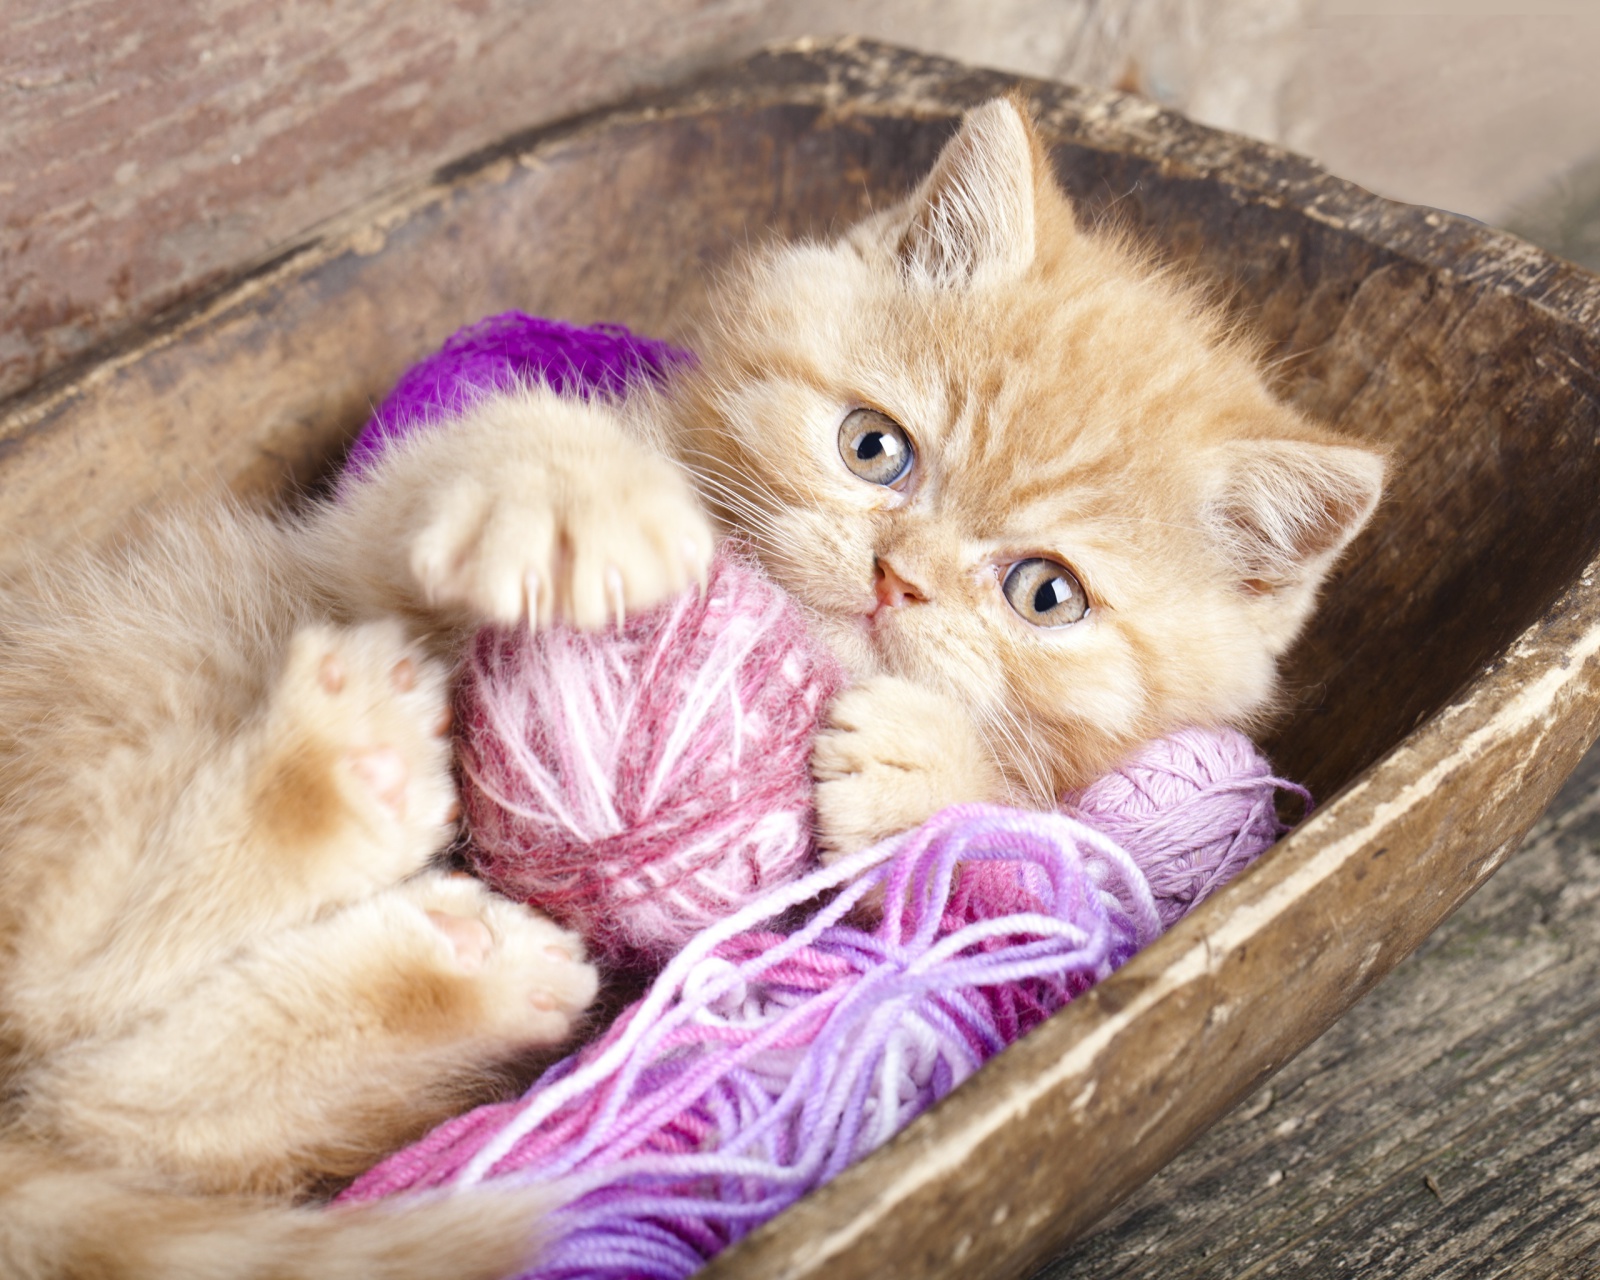 Fondo de pantalla Cute Kitten Playing With A Ball Of Yarn 1600x1280